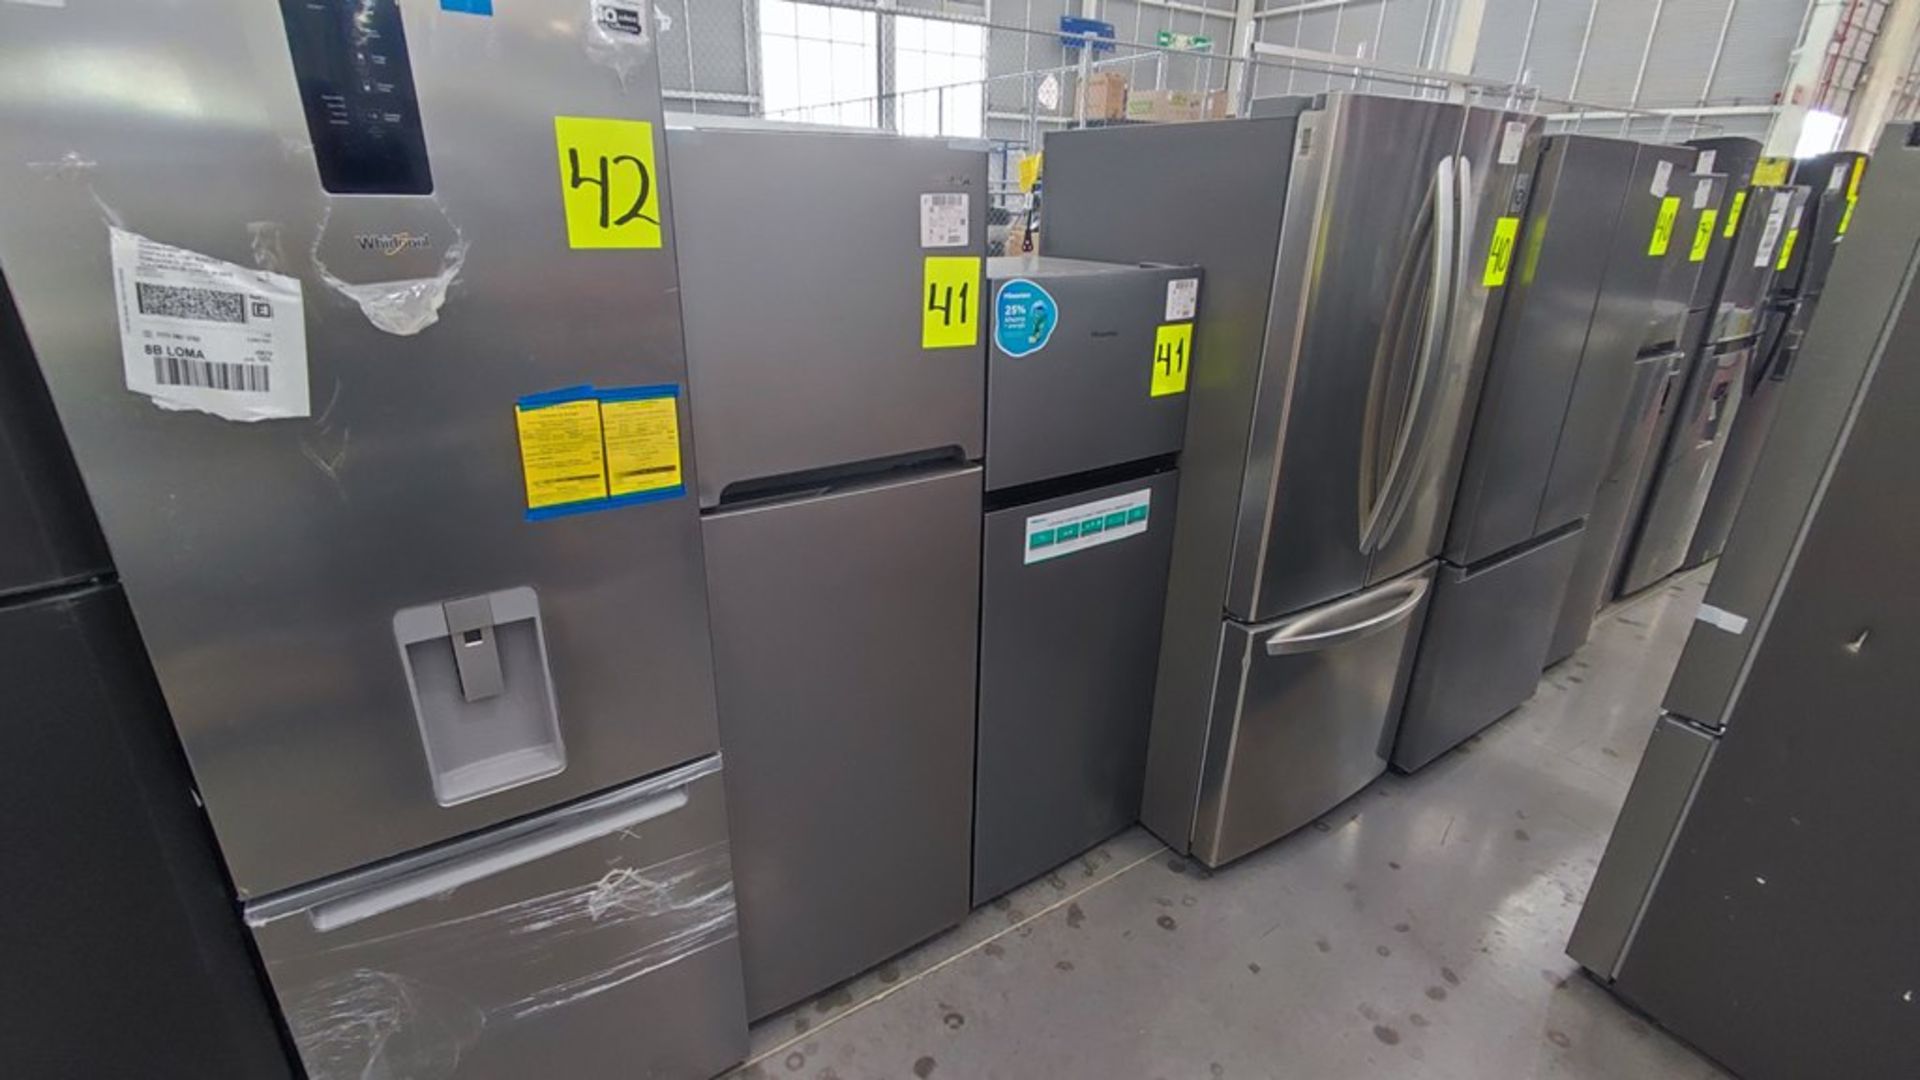 Lote de 2 Refrigeradores contiene: 1 Refrigerador Marca Hisense Modelo BCYNY, No de serie 1B0205Z00 - Image 3 of 11